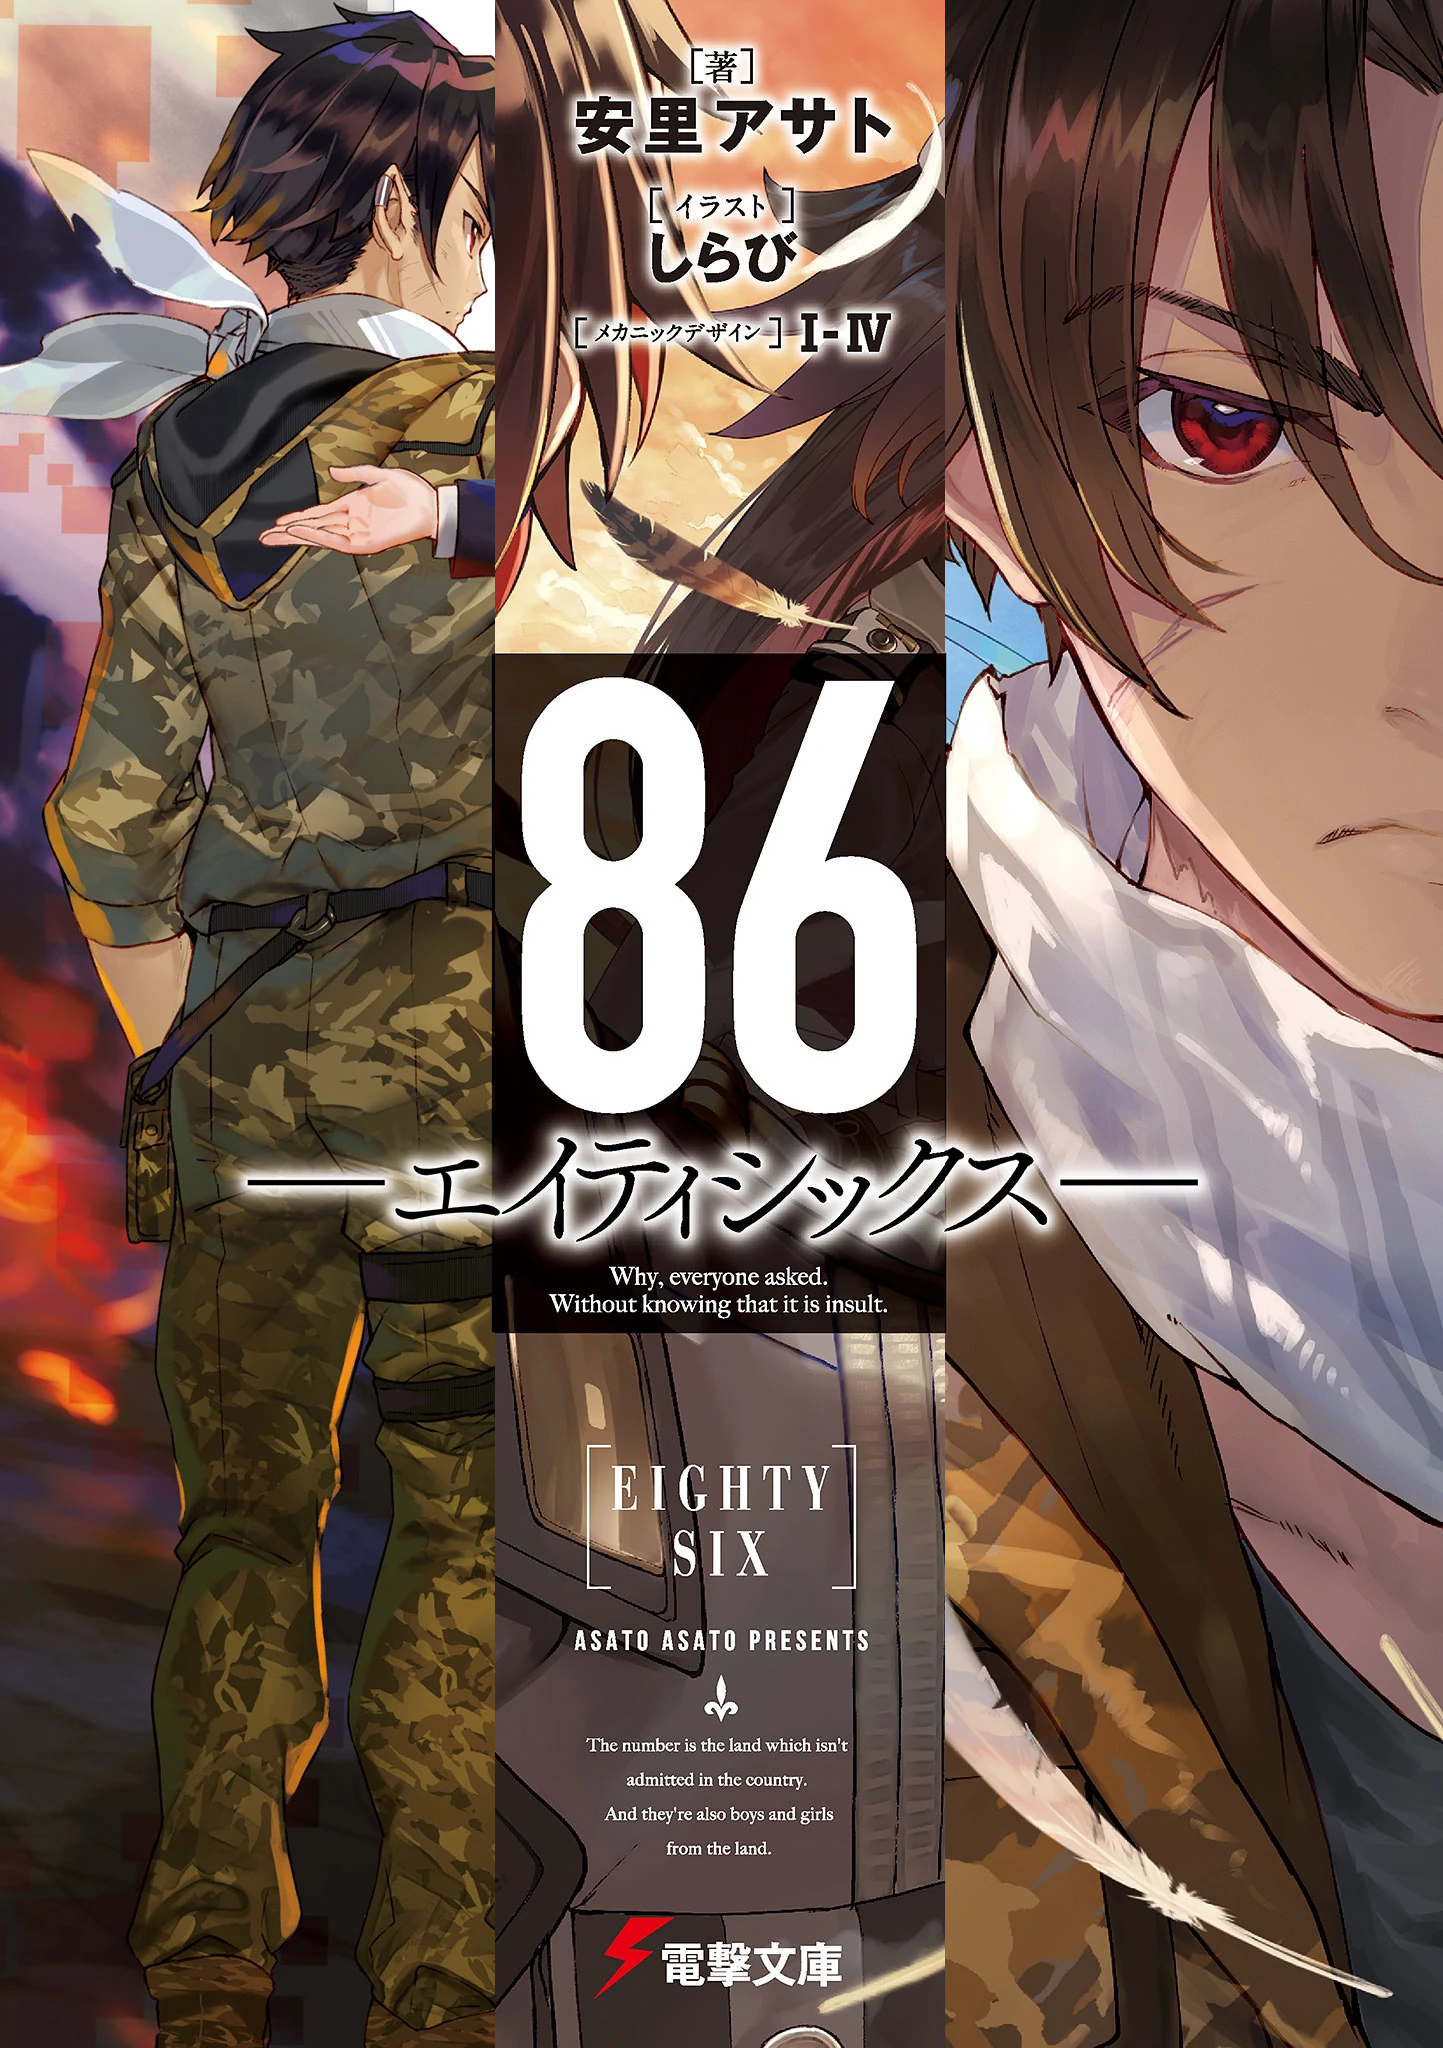 86-EIGHTY-SIX, Vol. 3 (light novel): Run by Asato, Asato